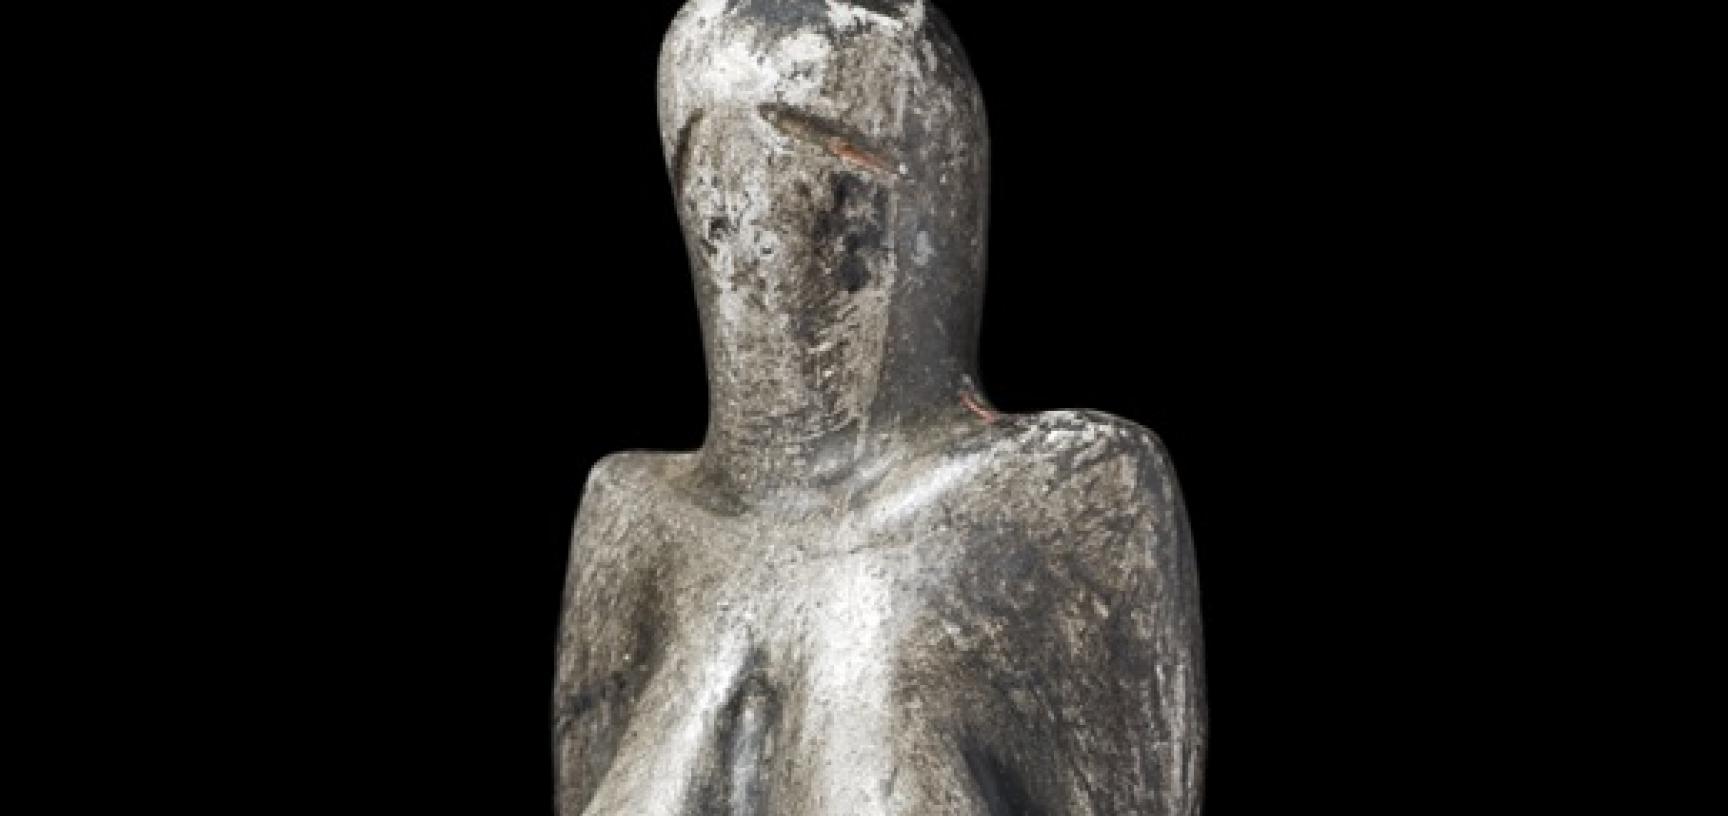 Venus figurine